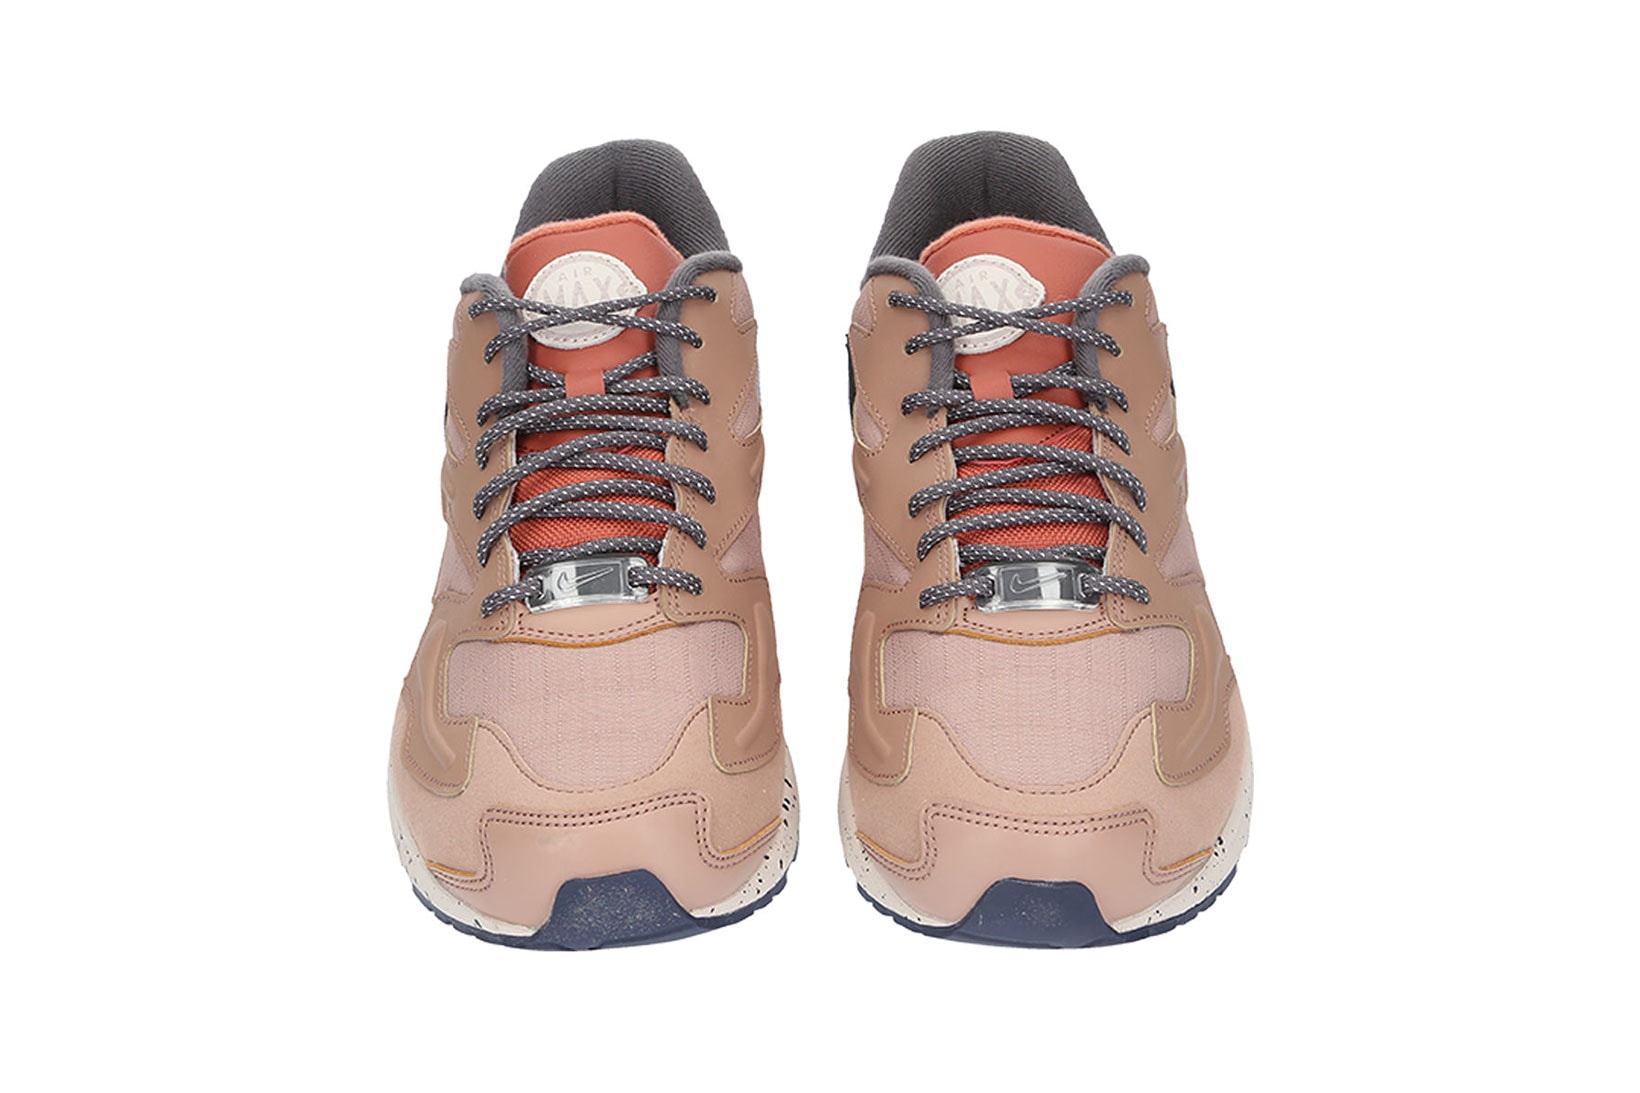 nikes air max 2 light lx sneakers beige brown purple shoes footwear sneakerhead